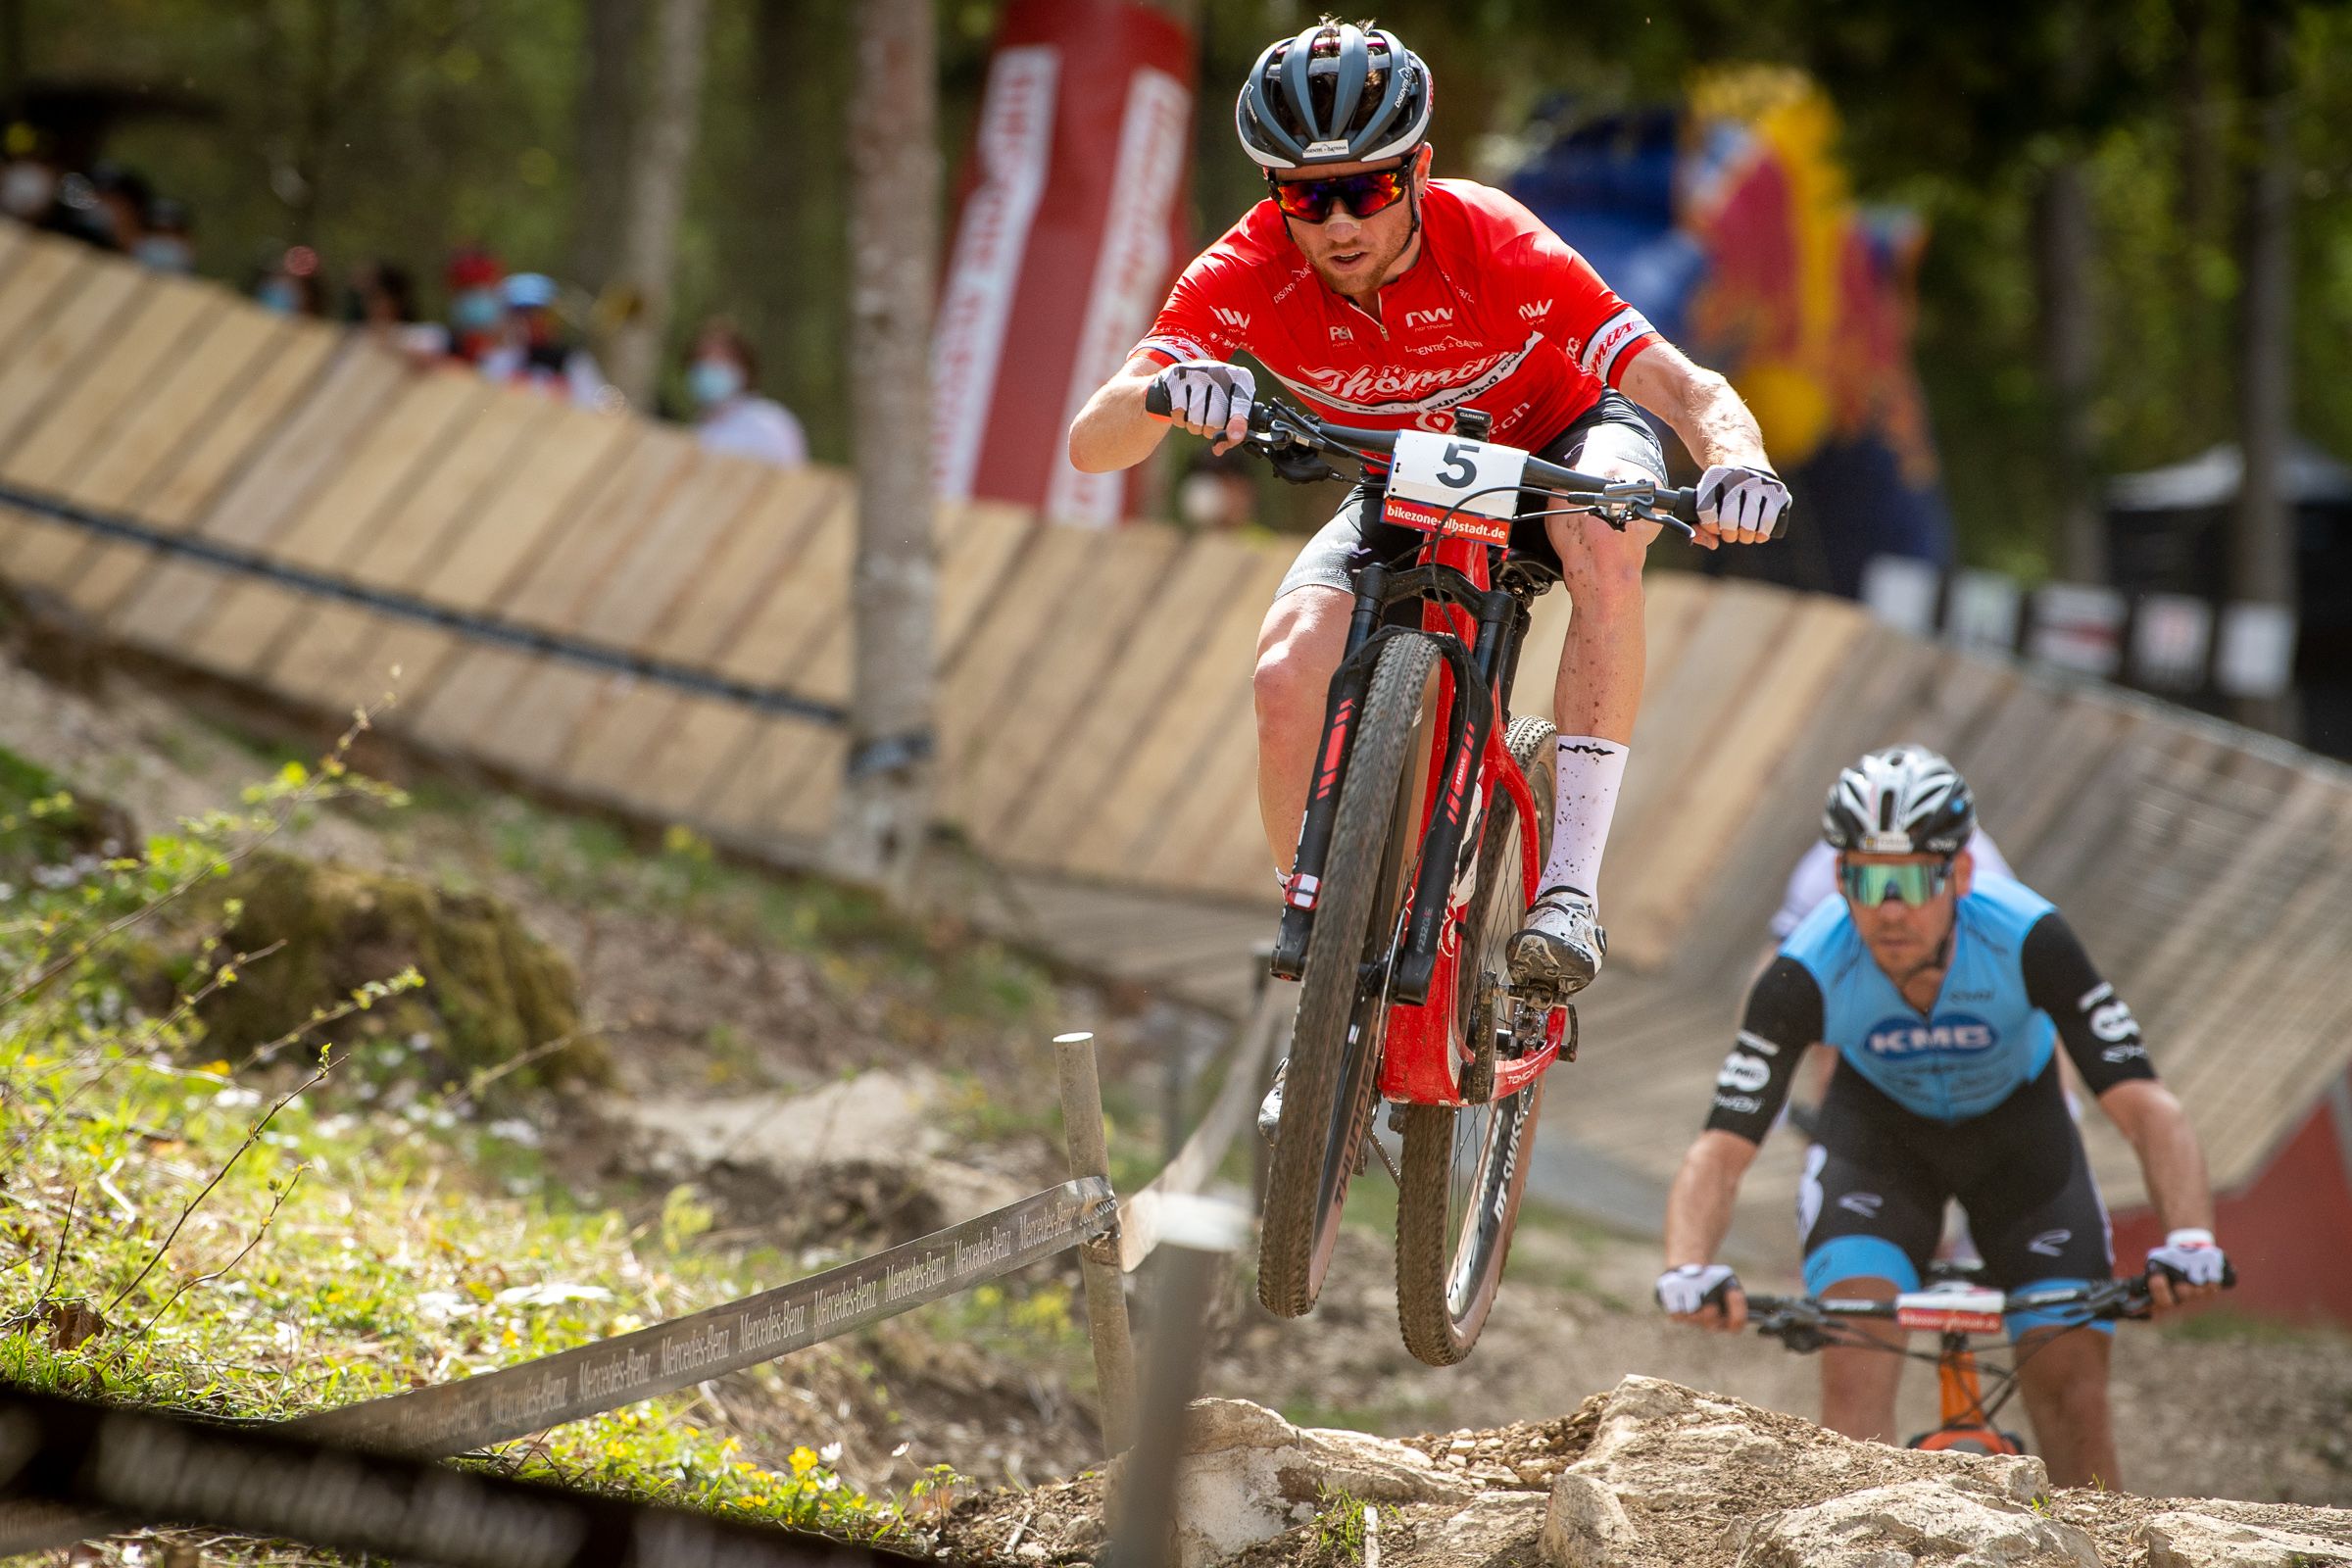 Trotz Defekt: Flückiger auf Rang 3 in Albstadt | Thömus RN Swiss Bike Team